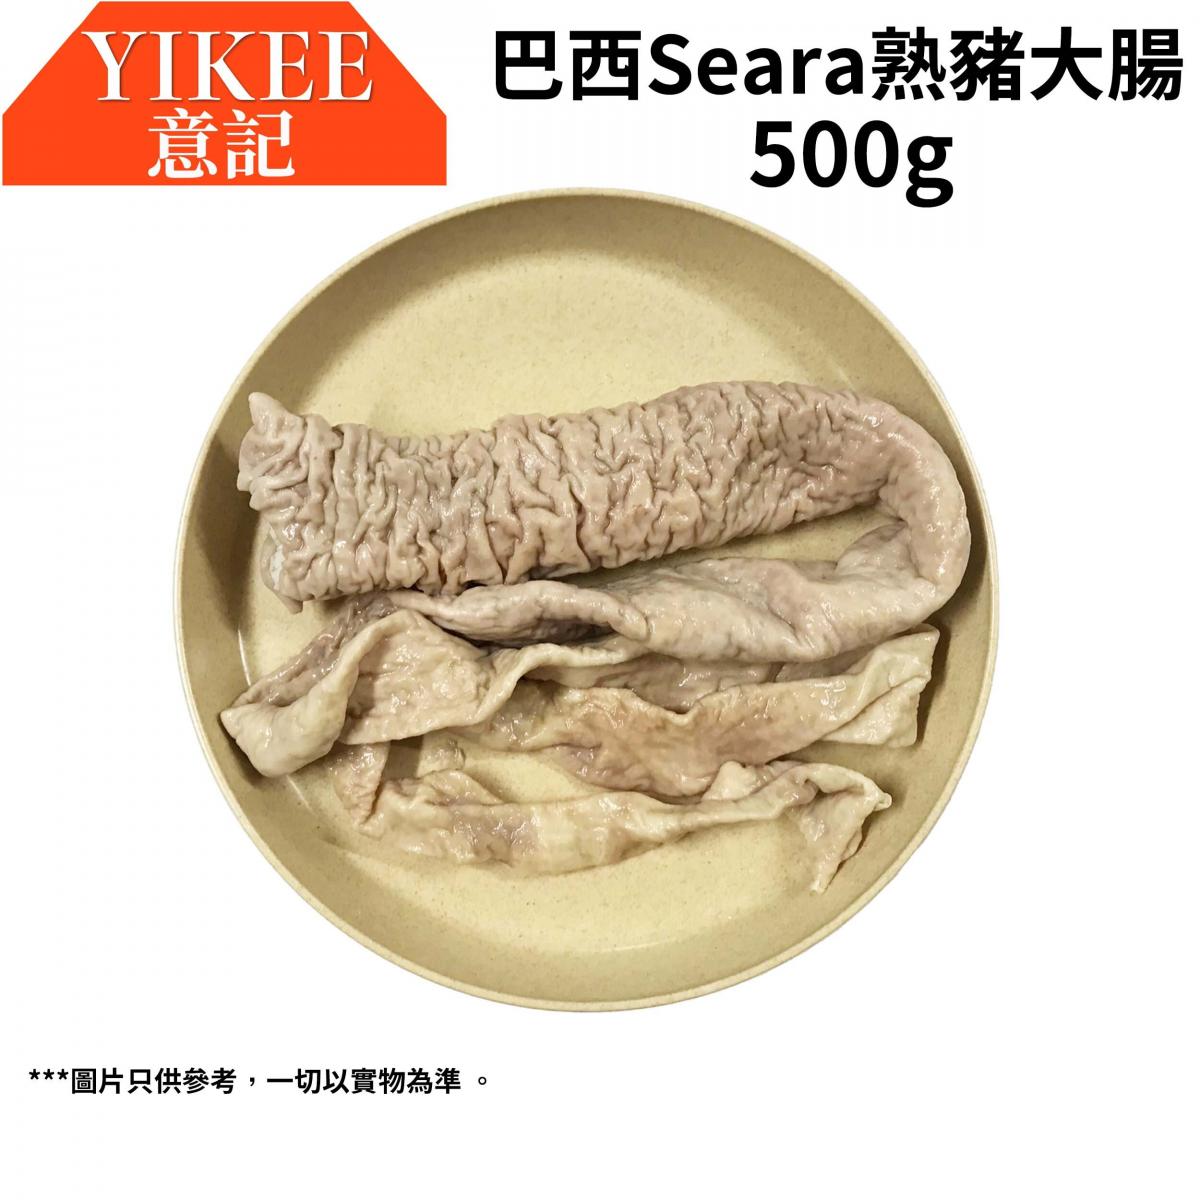 意記| 巴西Seara(熟)豬大腸(500G) (急凍-18°C) | Hktvmall 香港最大網購平台